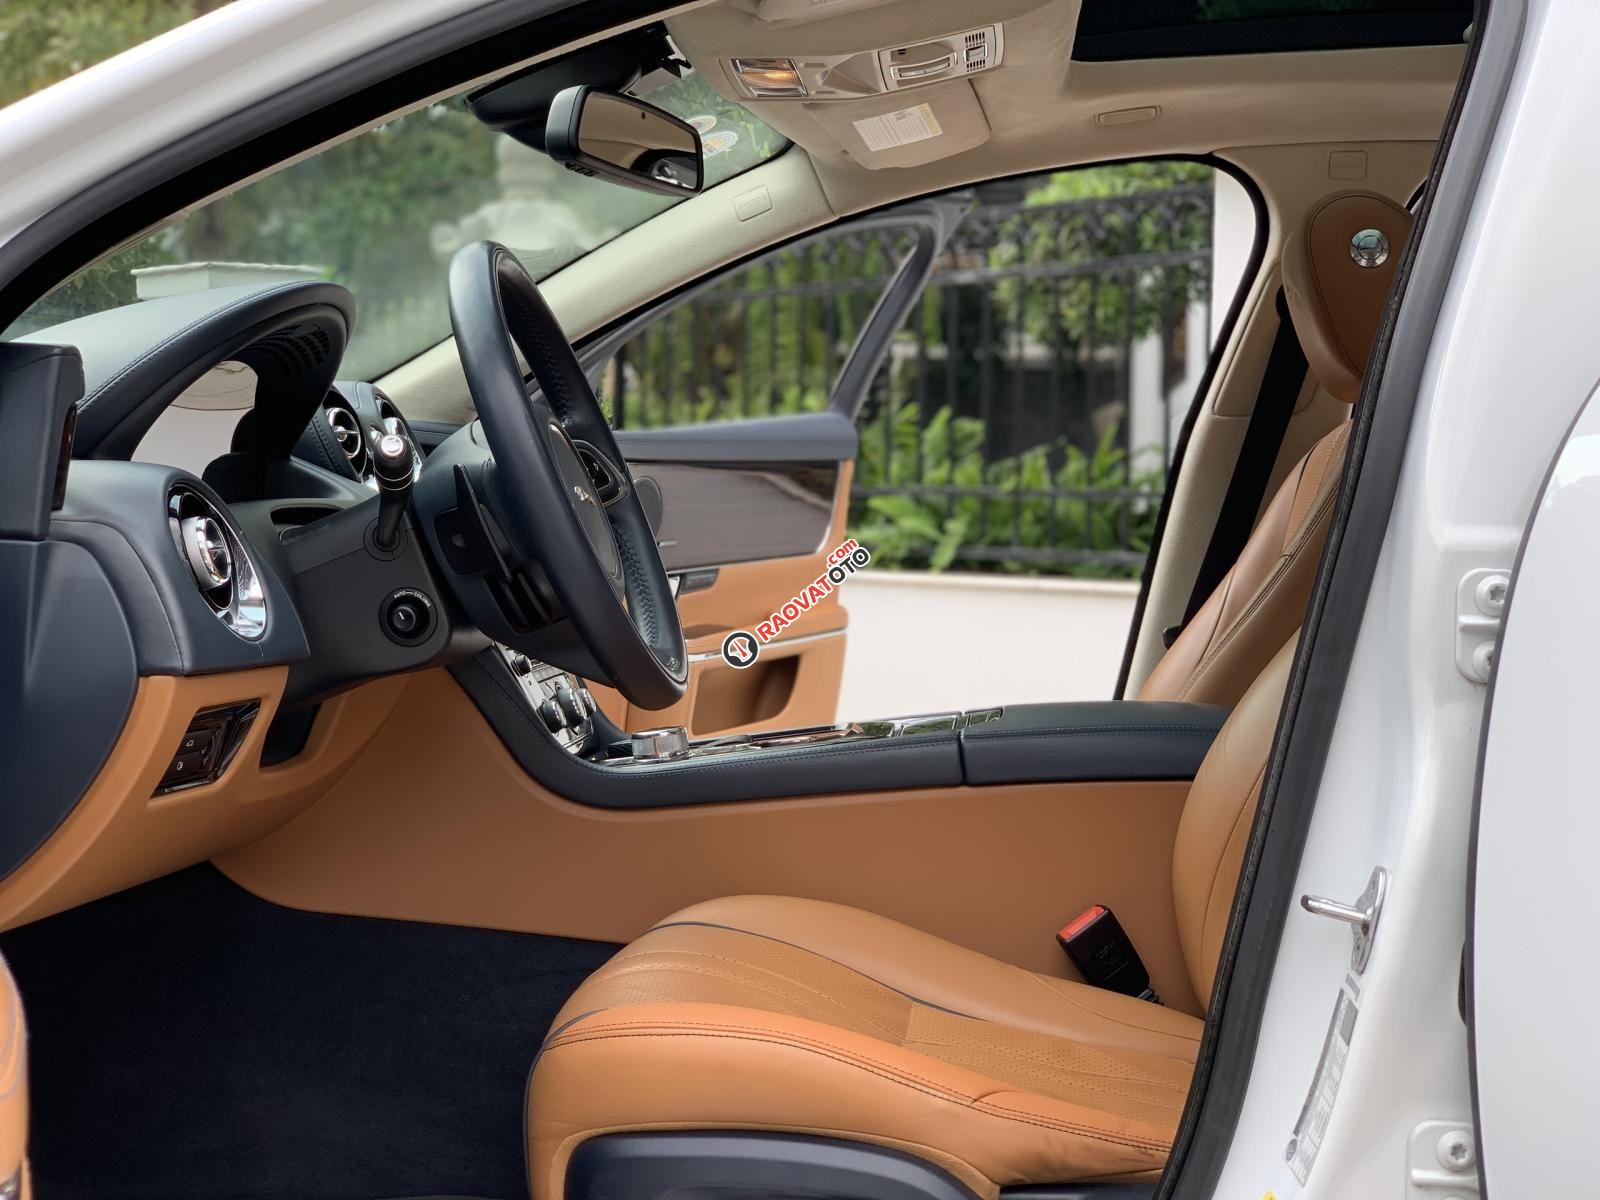 Cần bán lại xe cũ Jaguar XJL đời 2015, giá rẻ, giao xe nhanh-4